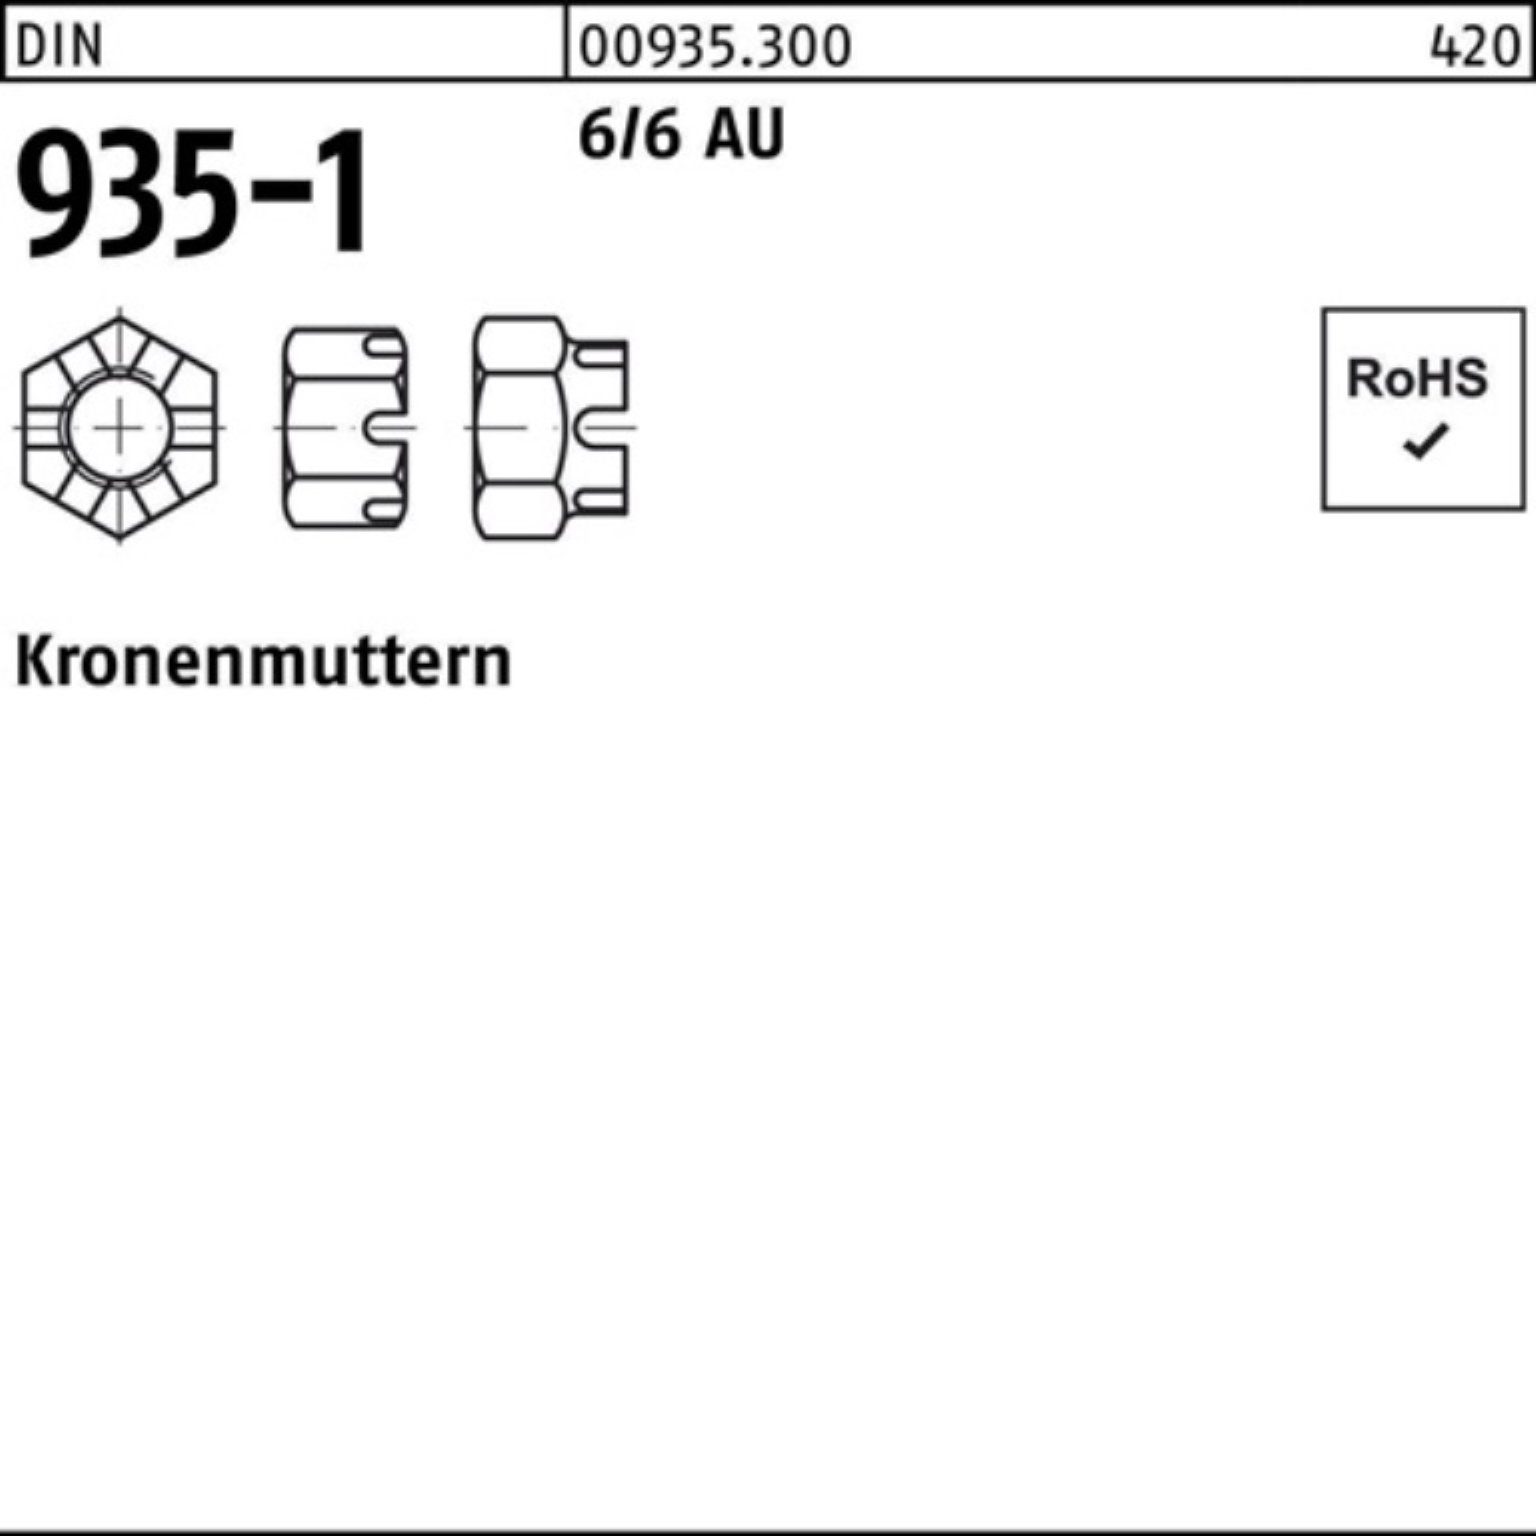 Kronenmutter DIN Reyher M48 6/6 Stück 100er Pack 1 Kronenmutter 935-1 Automatenstahl DIN